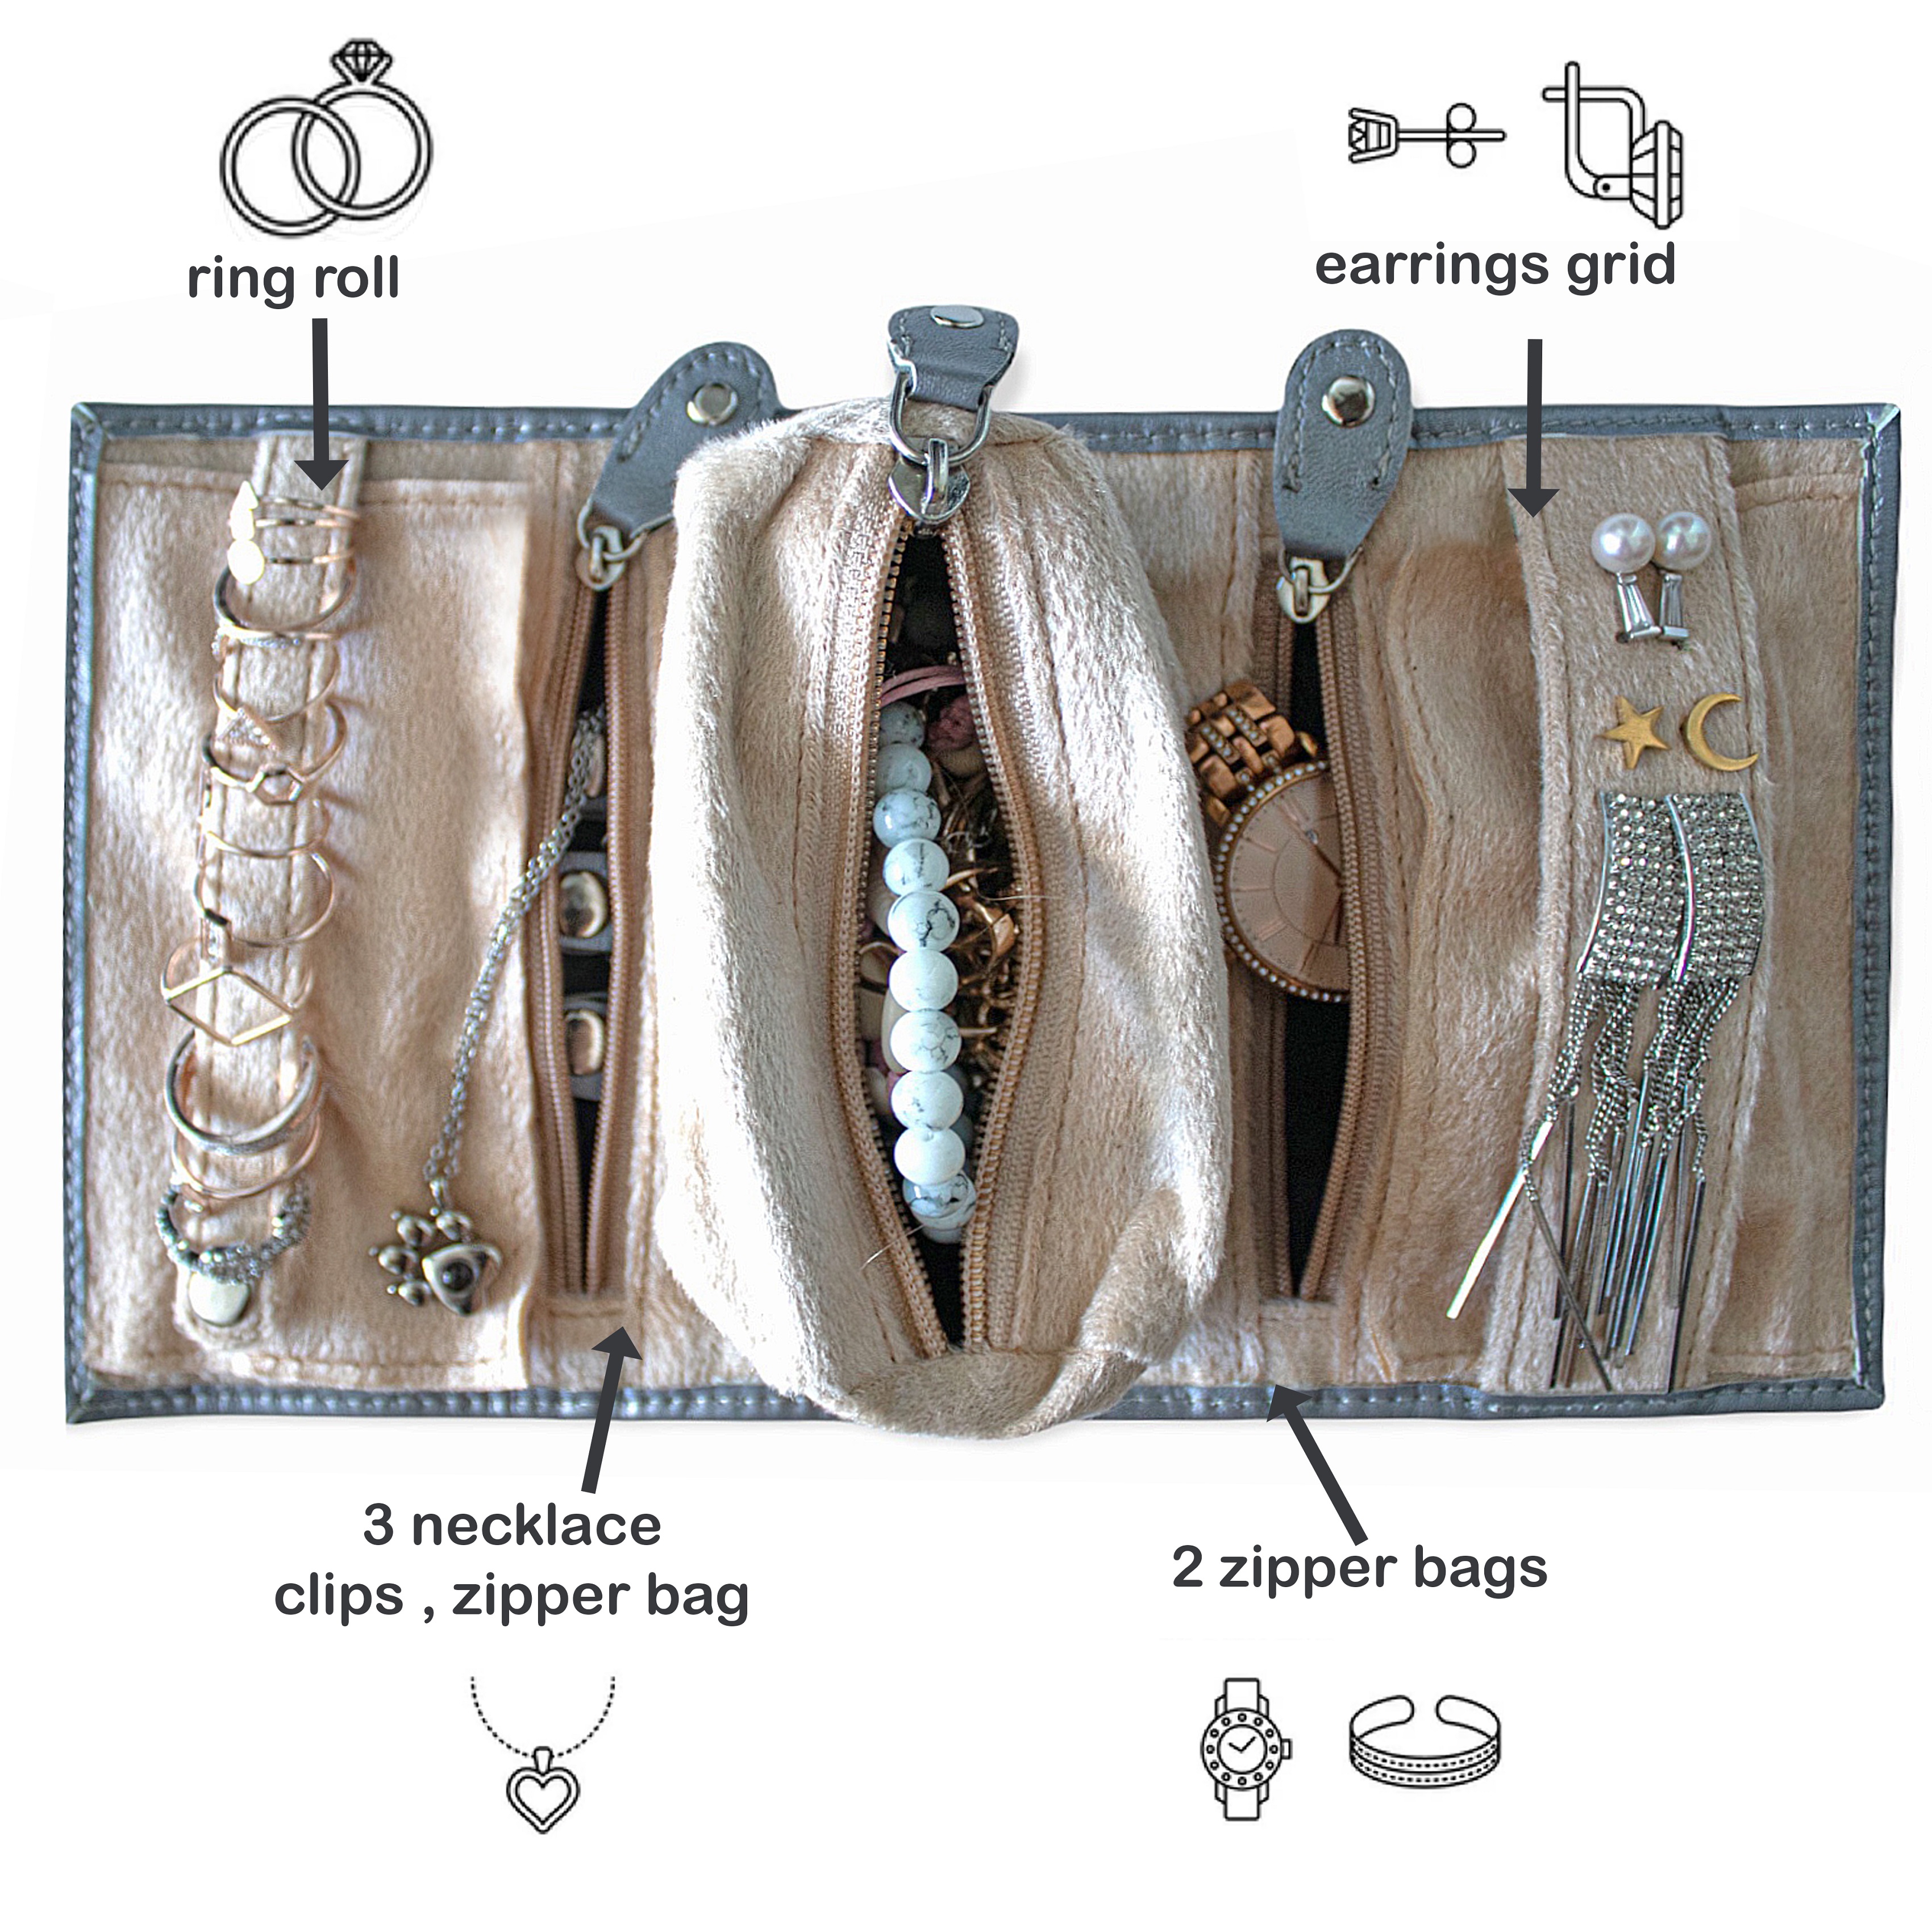 Ingear Jewelry Organizer Roll Bag for Women Girls Jewelry Box Organizer Bracelet Holder Earring Holder Organizer Jewelry Travel Organizer Clutch